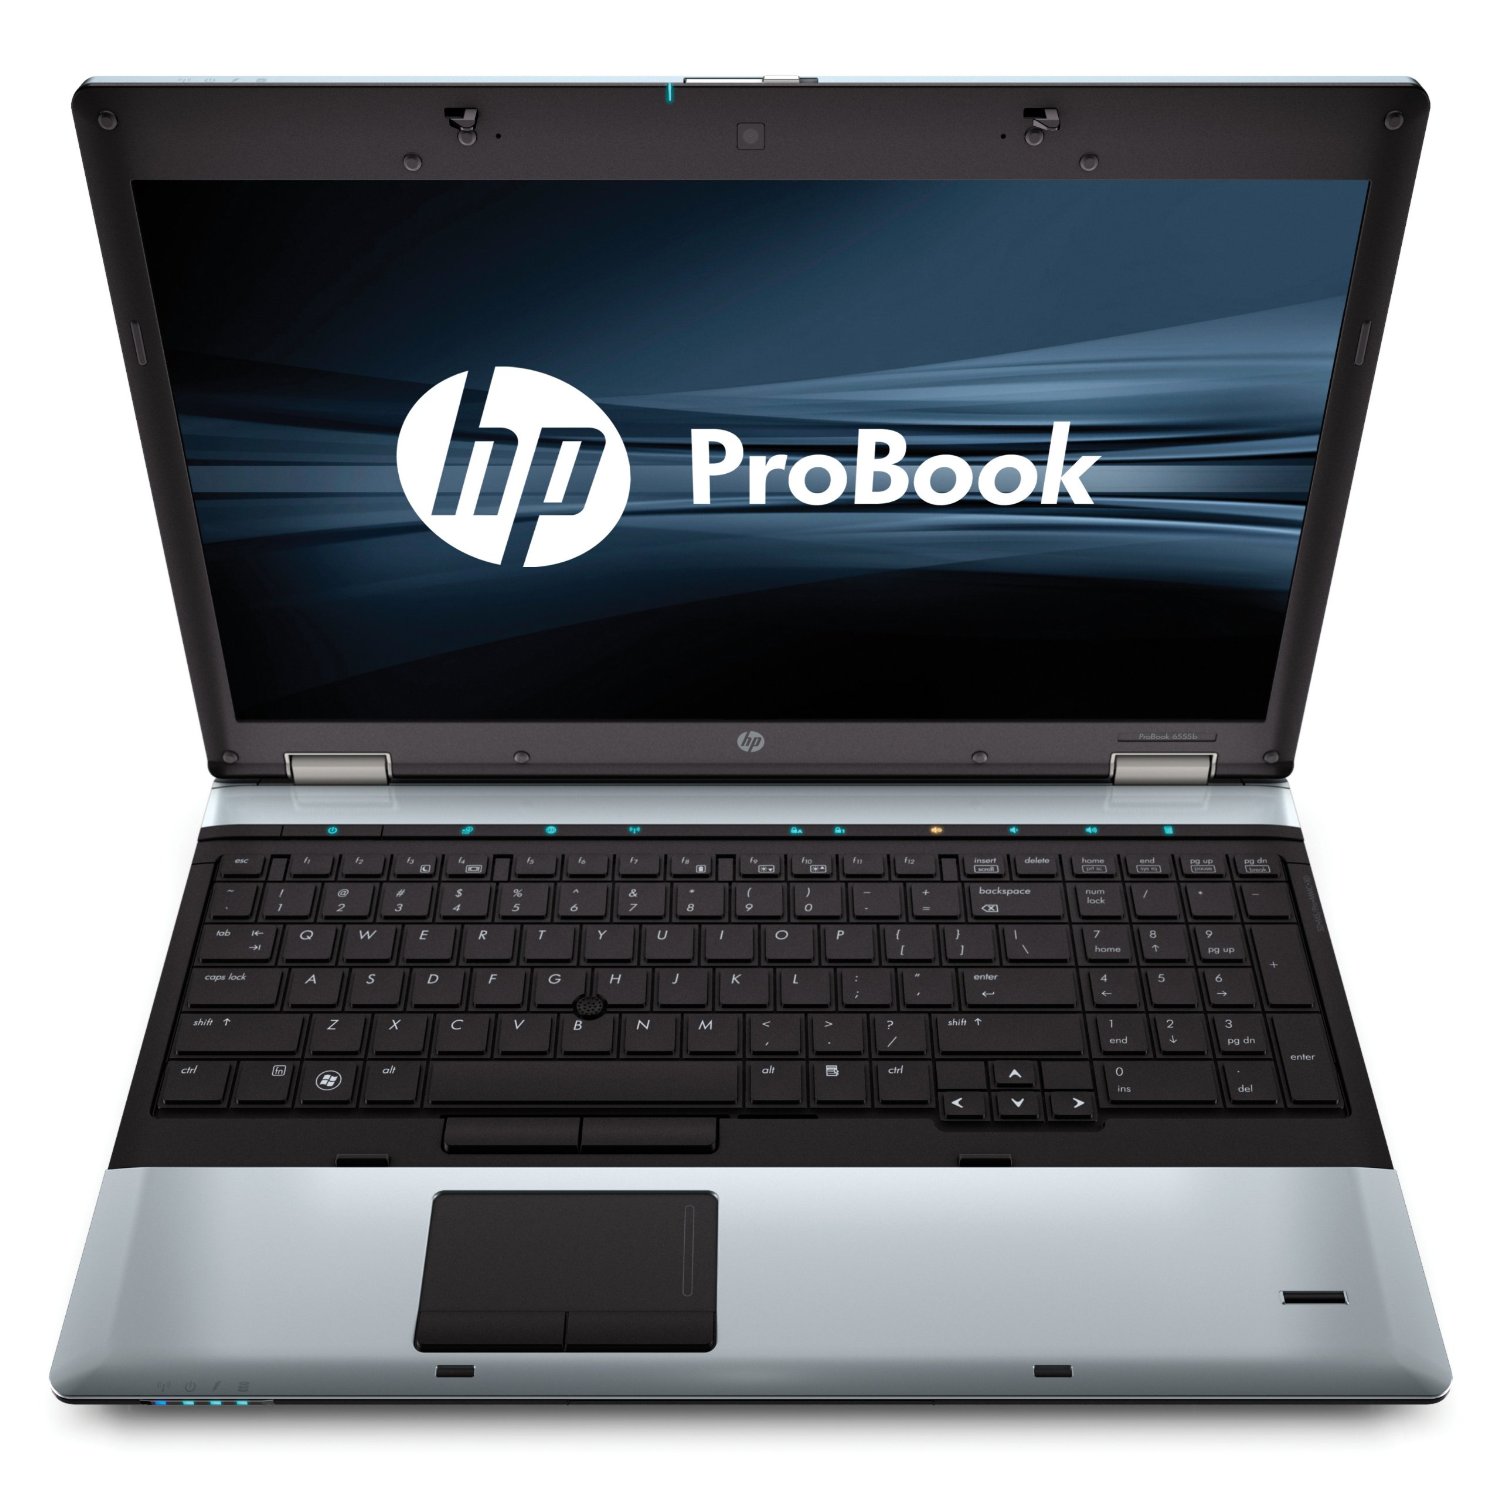 HP Probook 6555b (AMD, 2GB RAM, 120GB HDD, 15.6-inch, Webcam, Slightly Used)